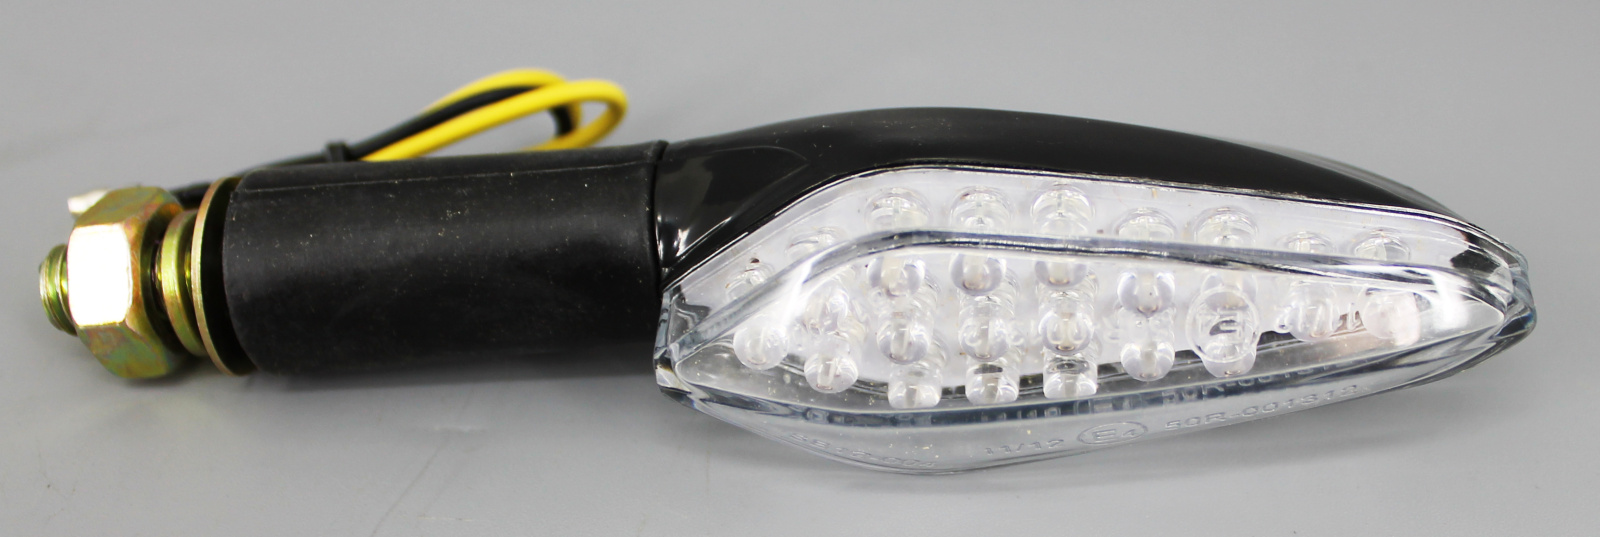 Указатель поворота LED QZ-001 светодиодные комплект 2шт фотография №2